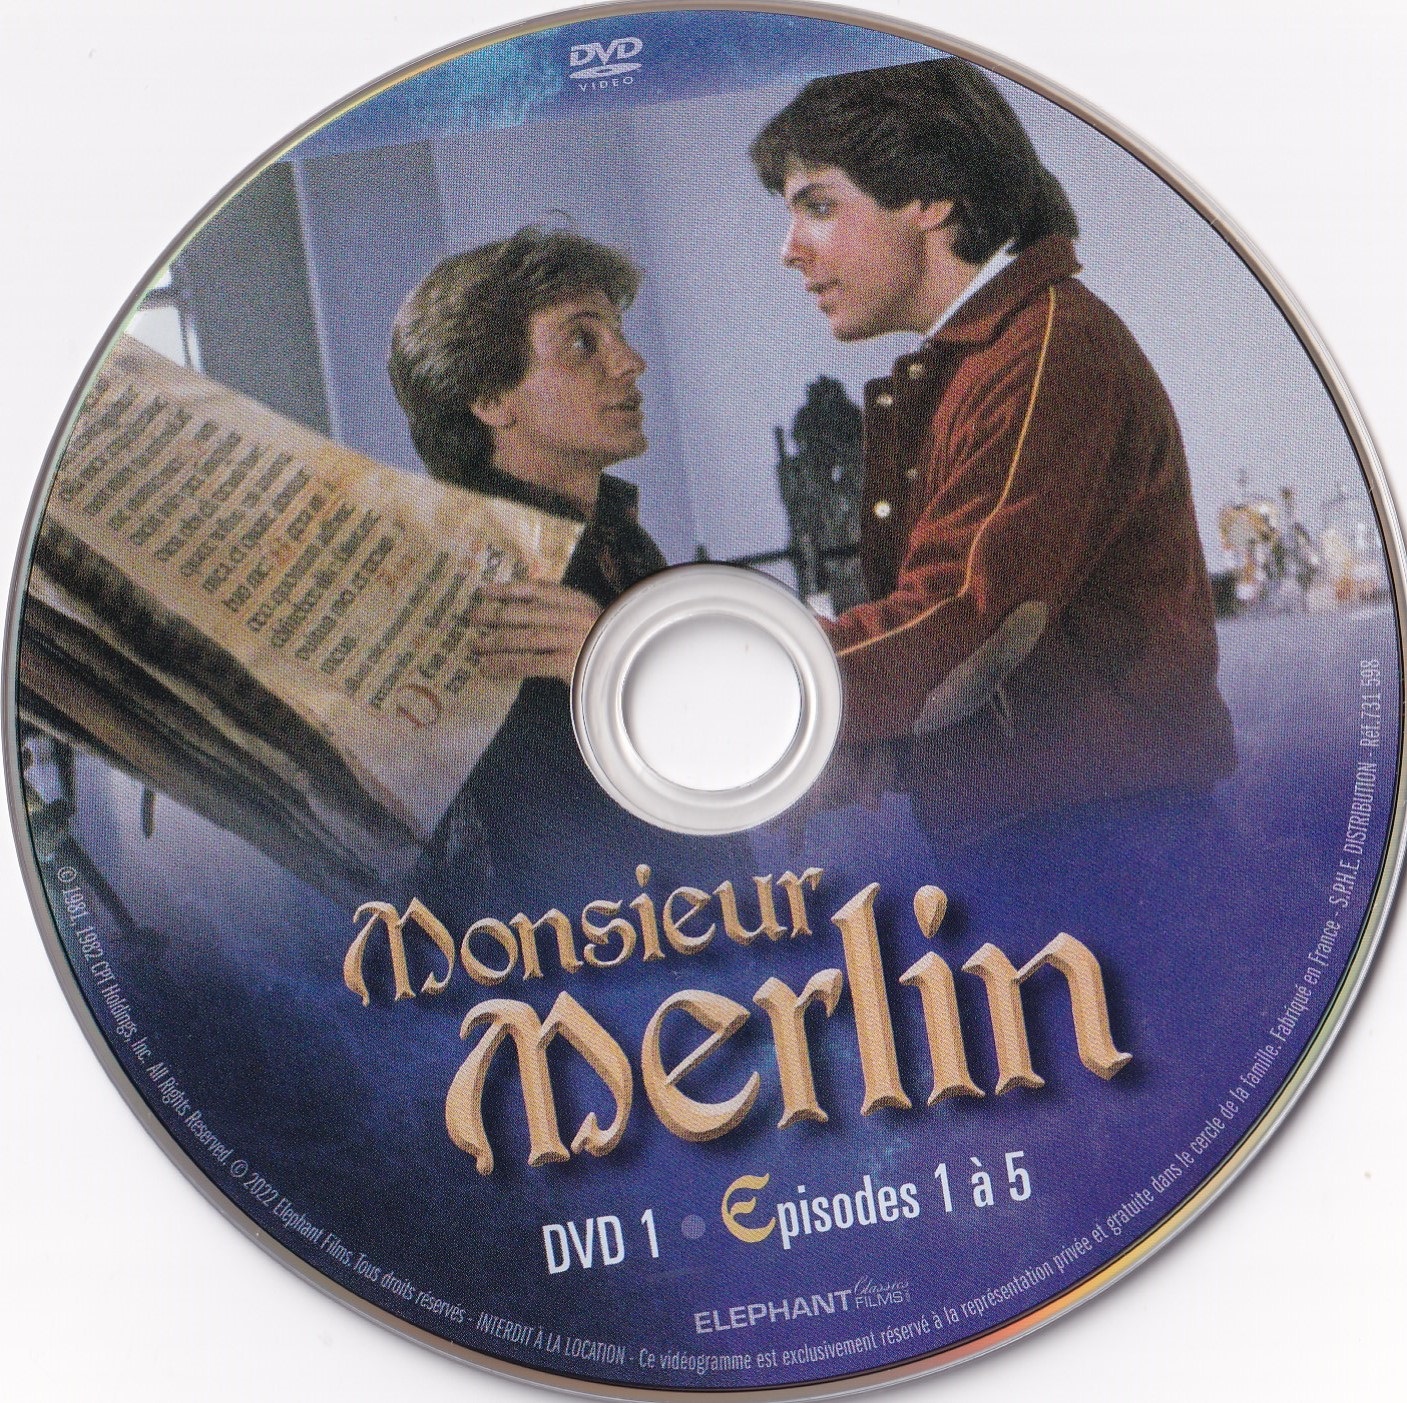 Monsieur Merlin DVD 1